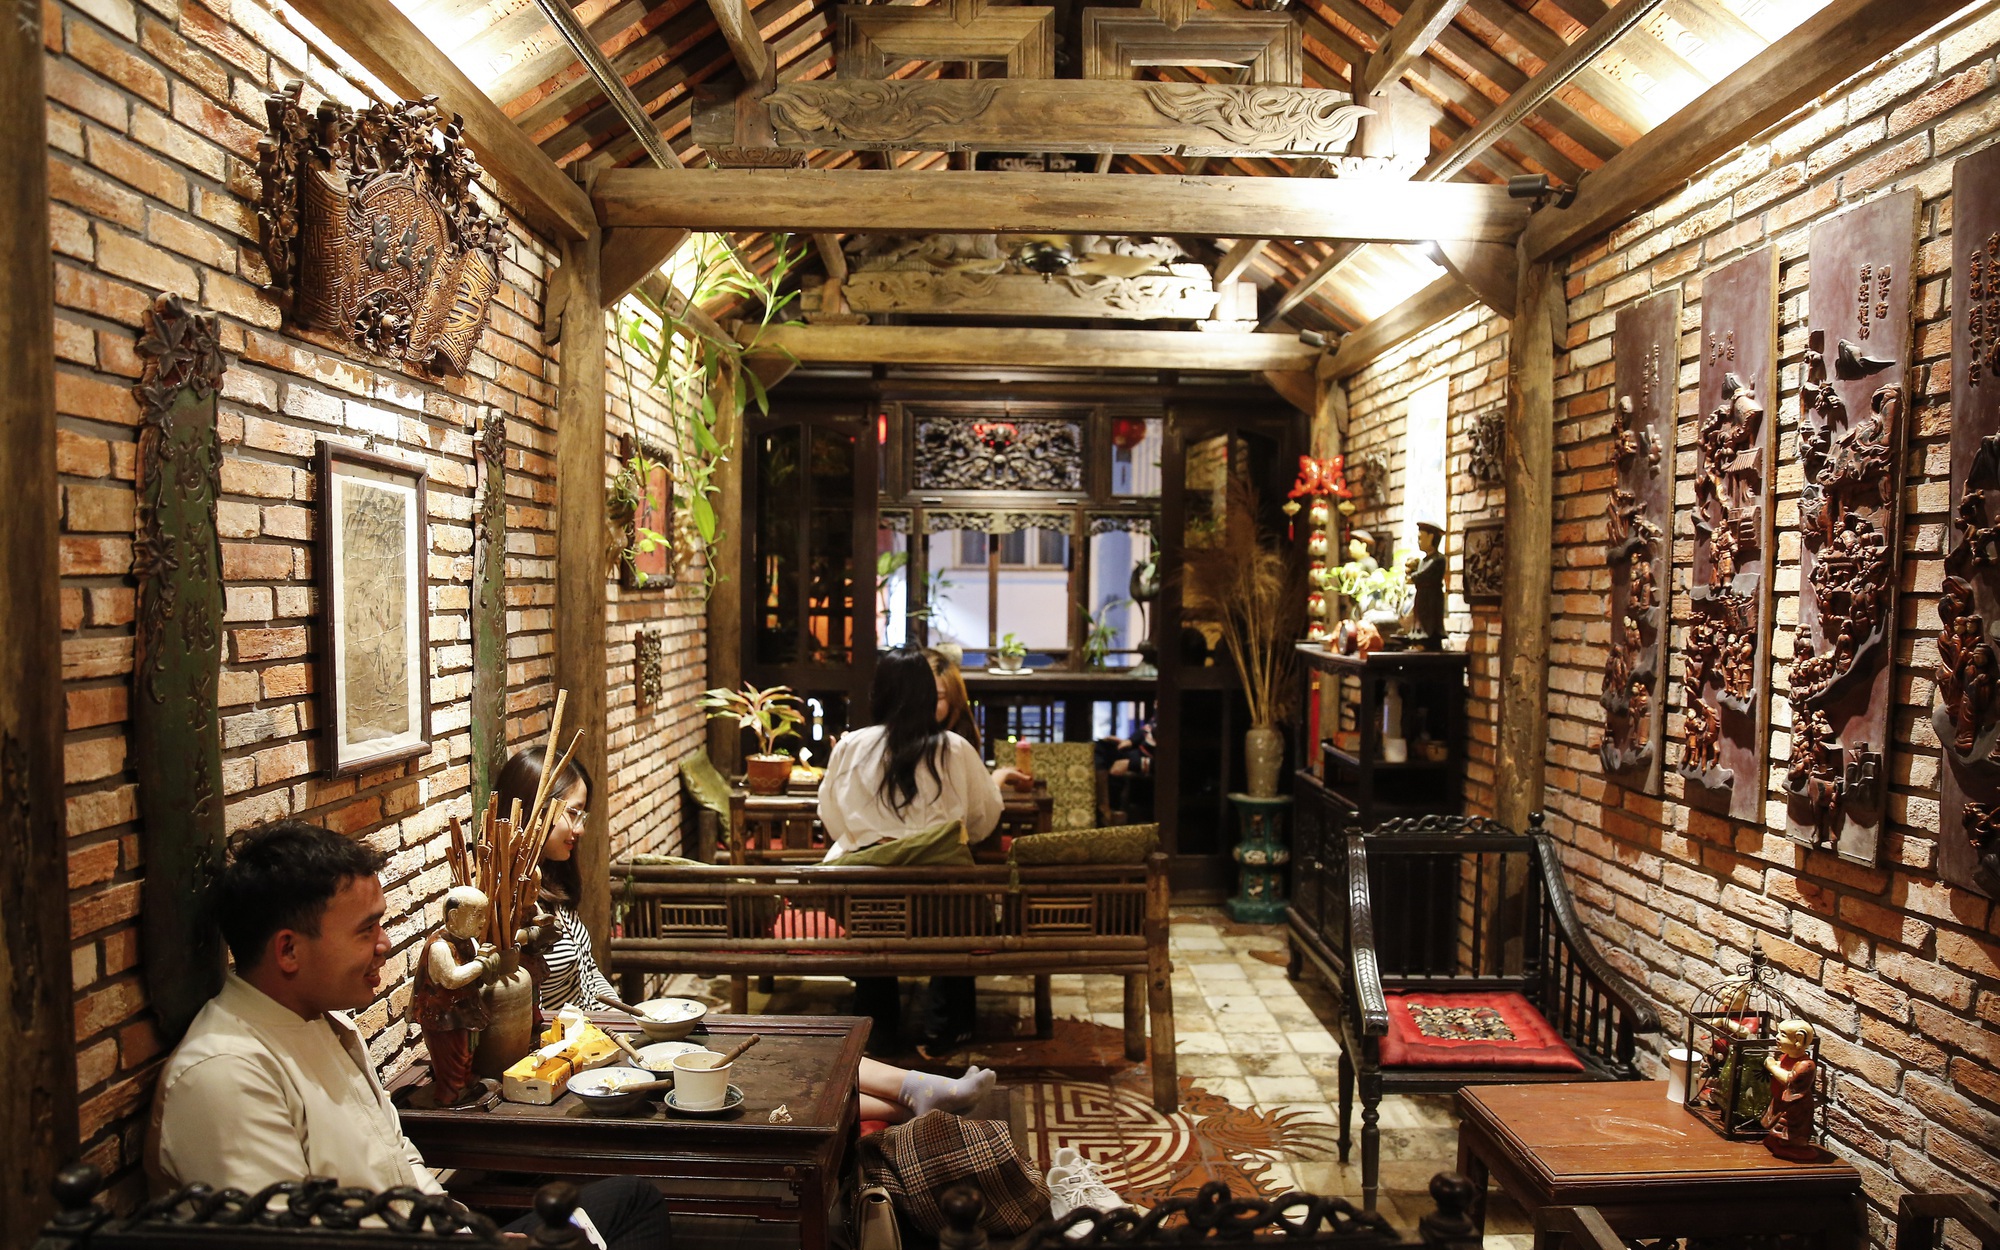 Độc đáo quán chè trong căn nhà cổ với không gian hoài niệm Hà Nội đầu thế kỷ 20